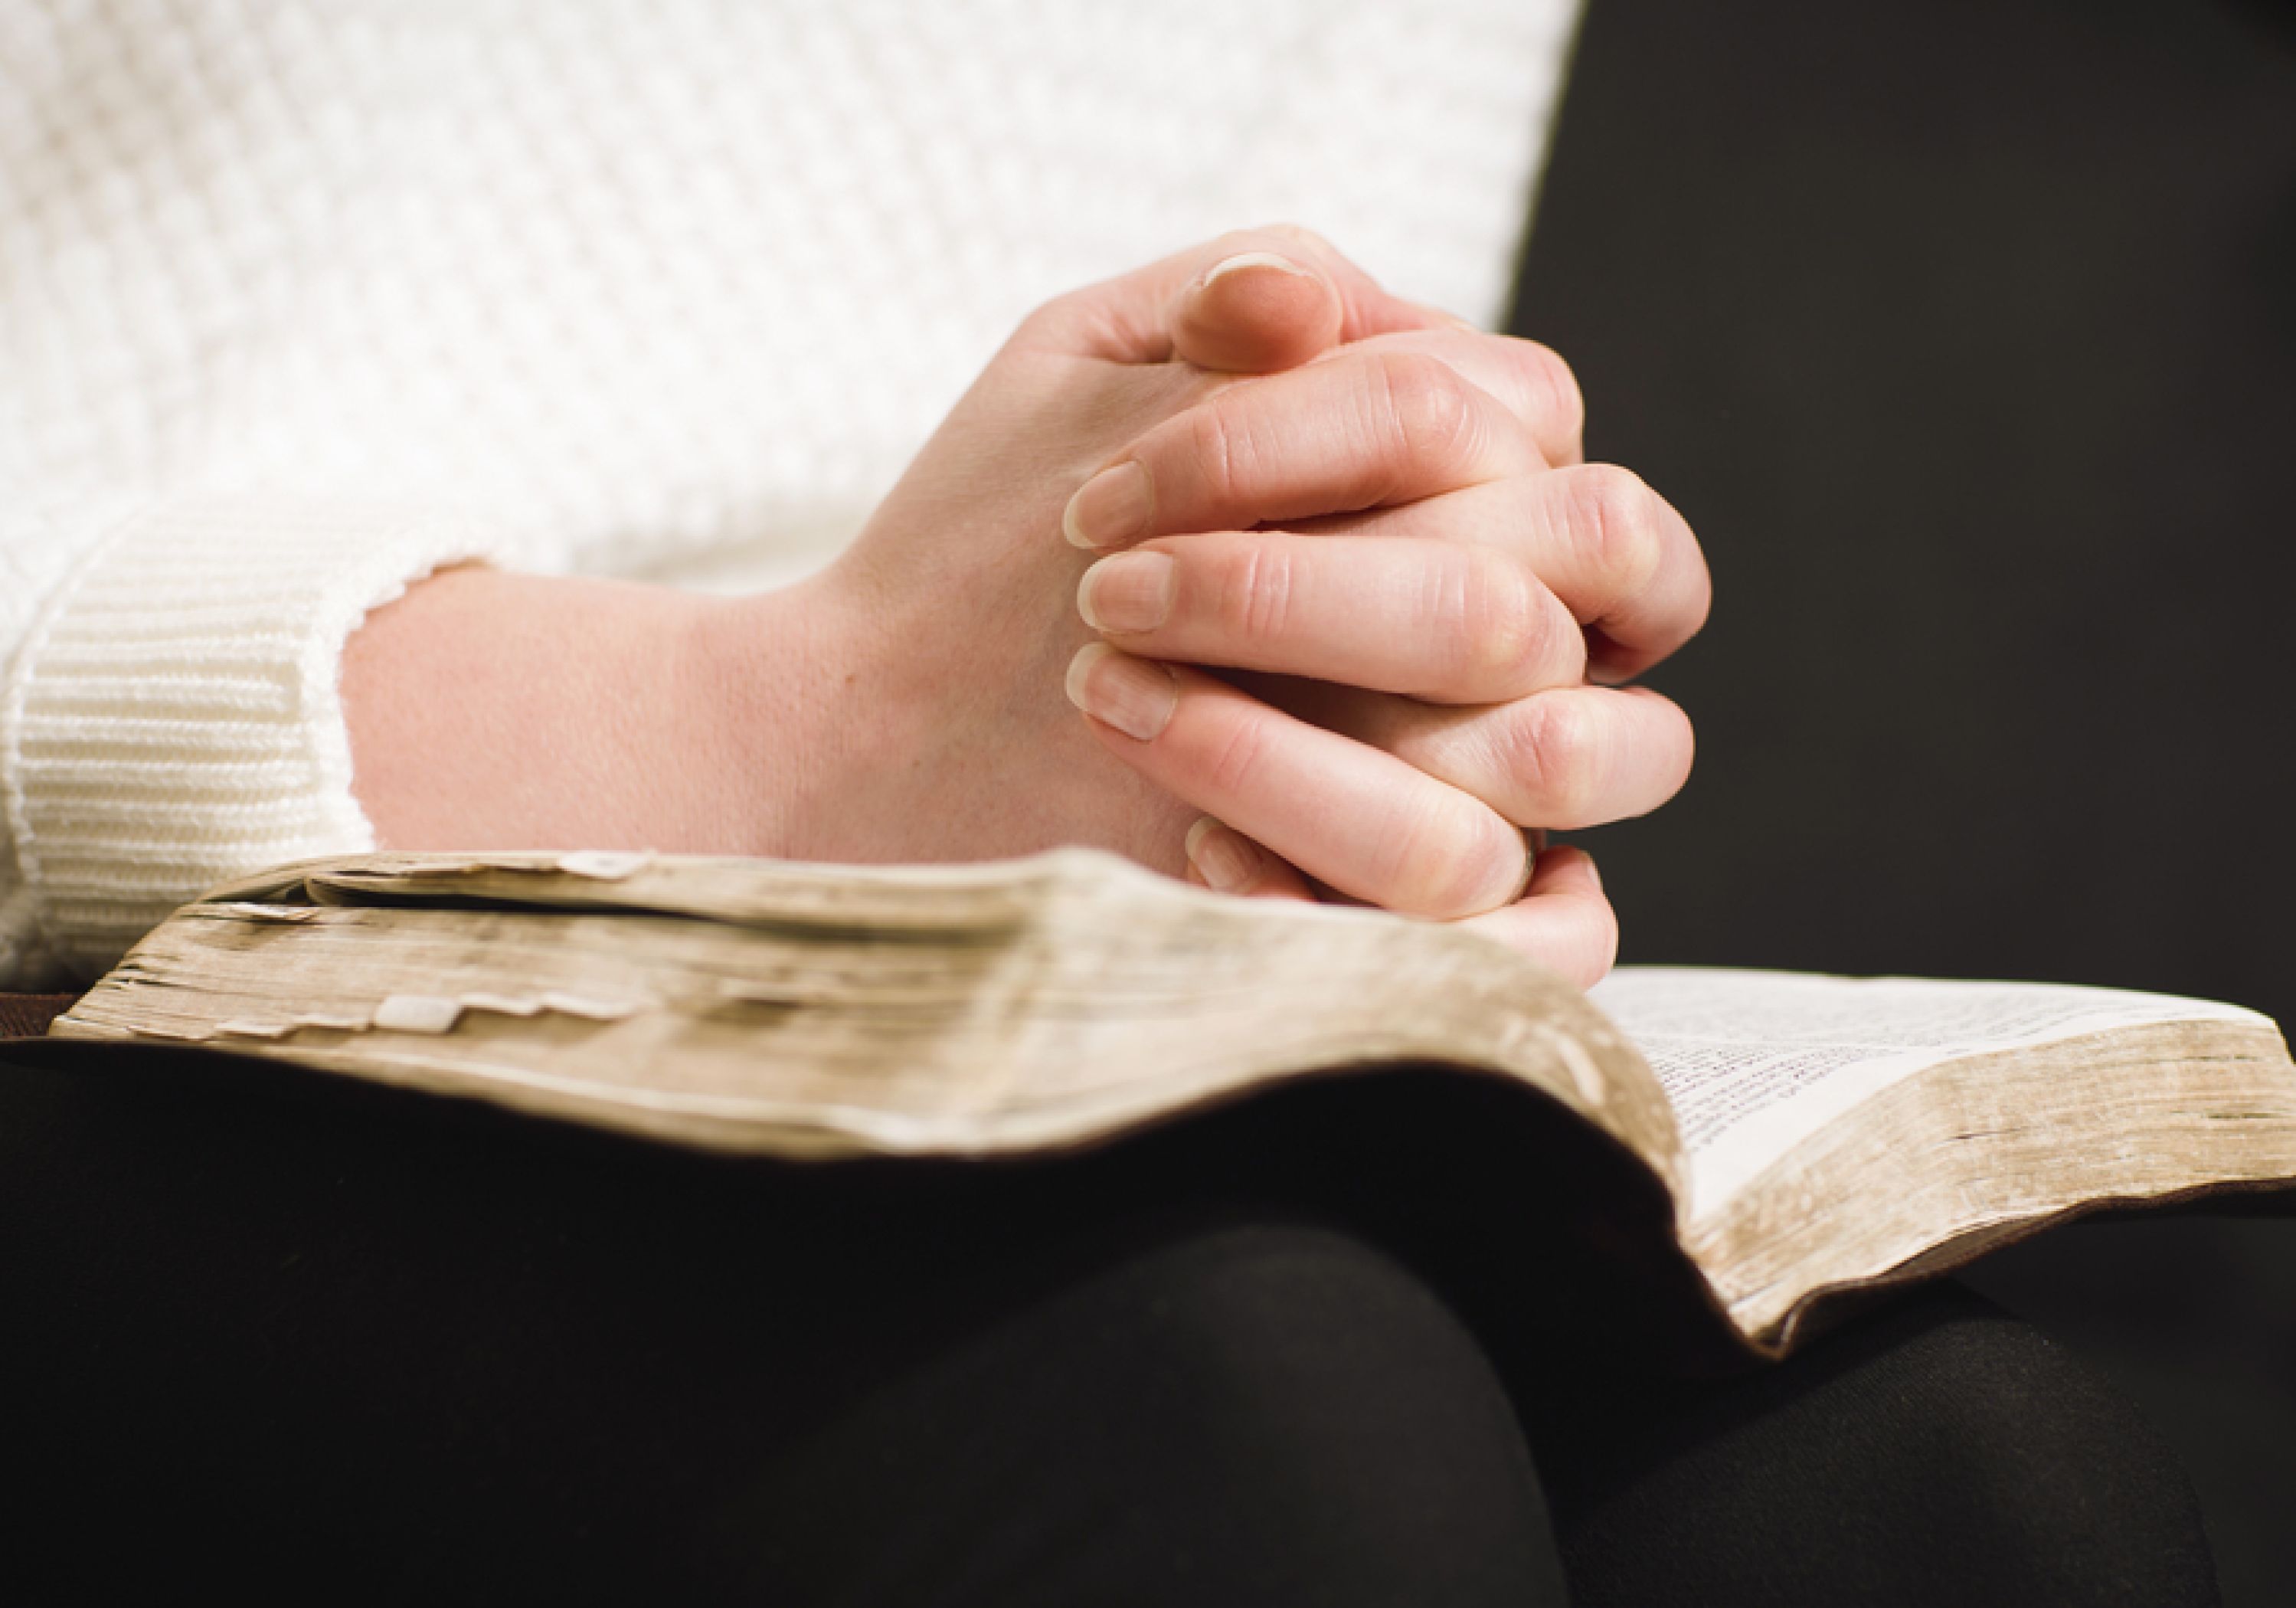 Vrouw las de Bijbel terwijl niemand het haar opdroeg